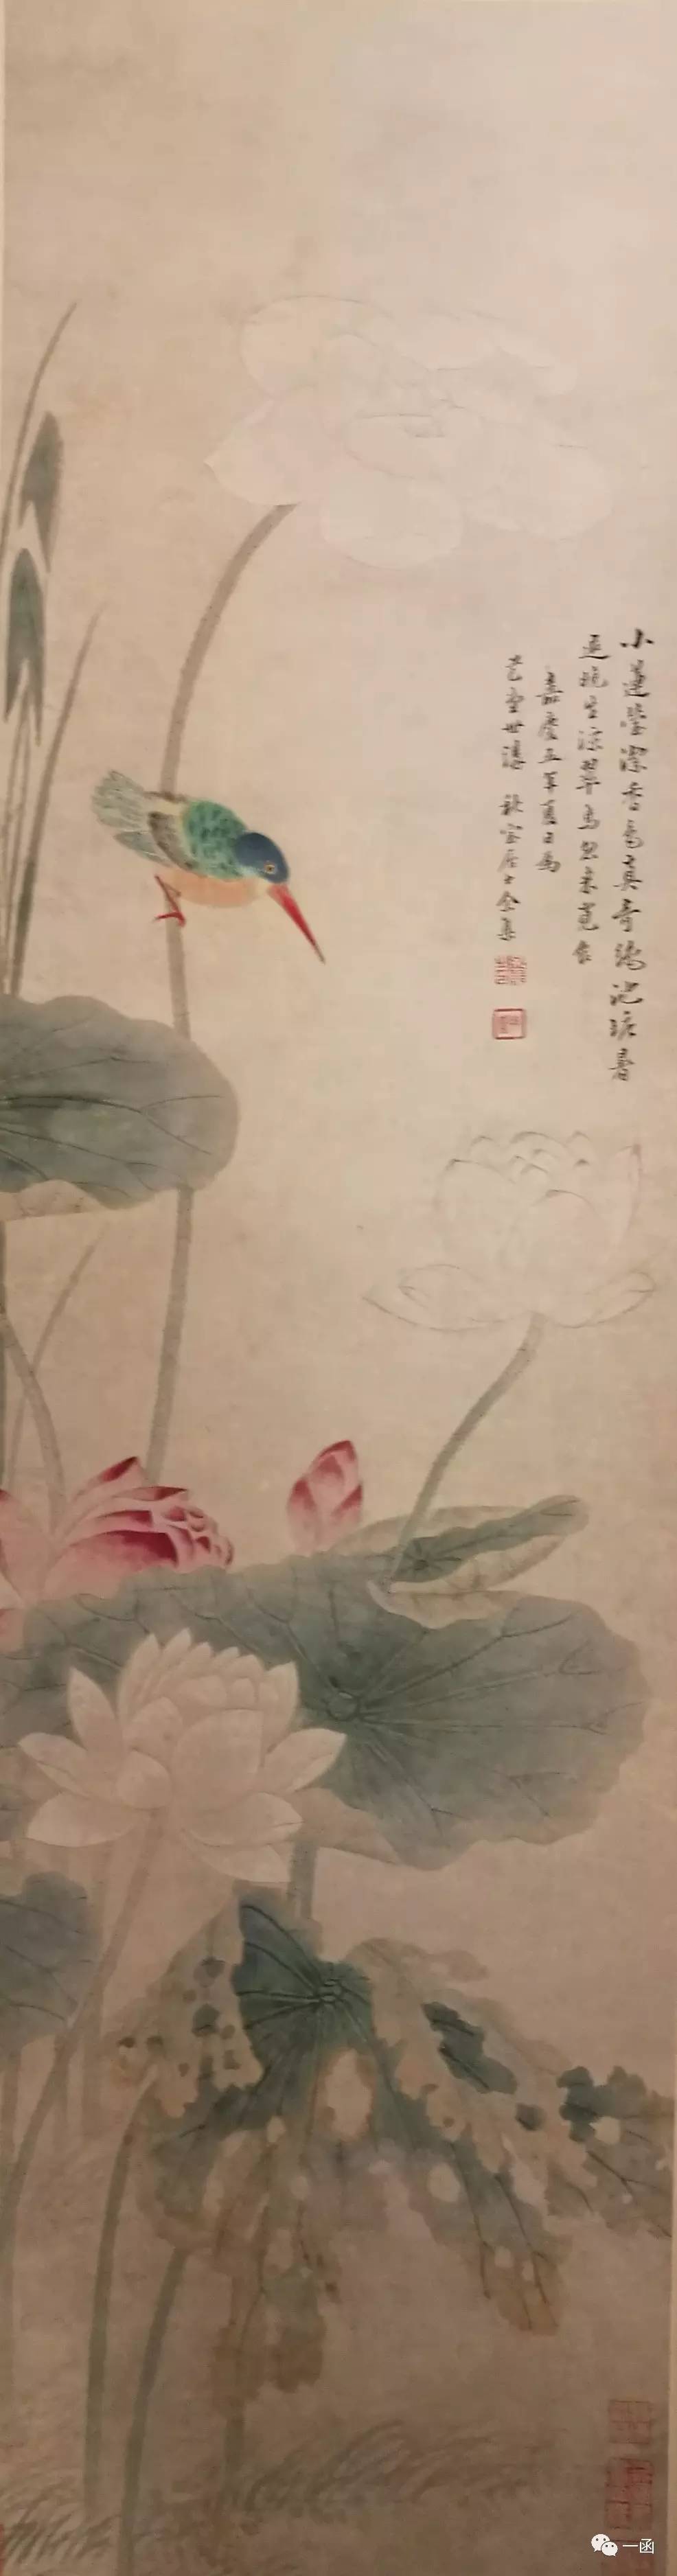 一函| 上海博物馆藏《余集画黄小松像轴》辨伪考-搜狐